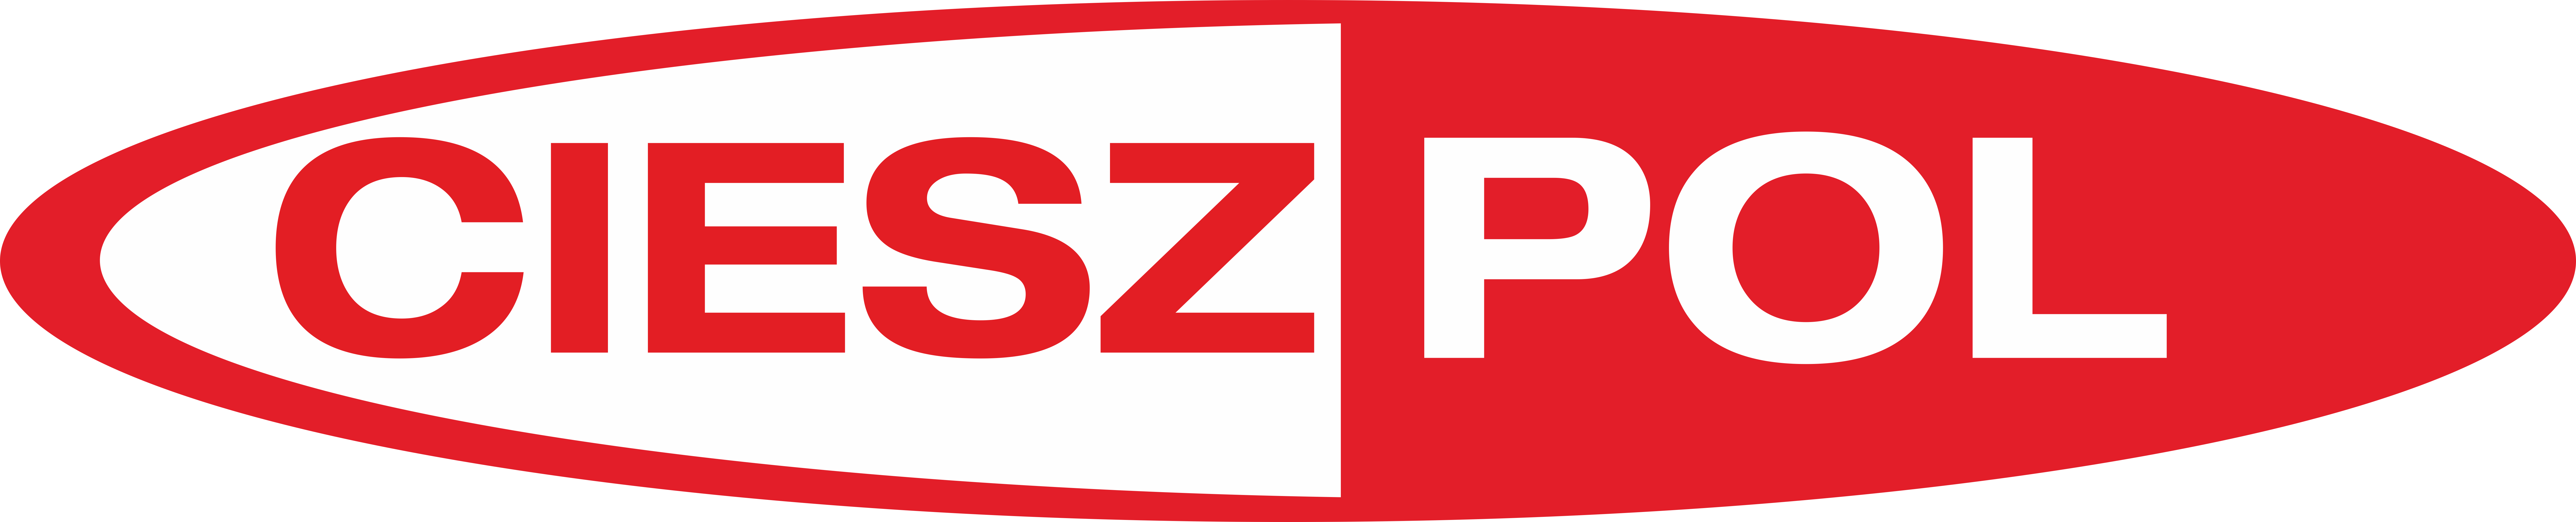 cieszpol_logo.gif